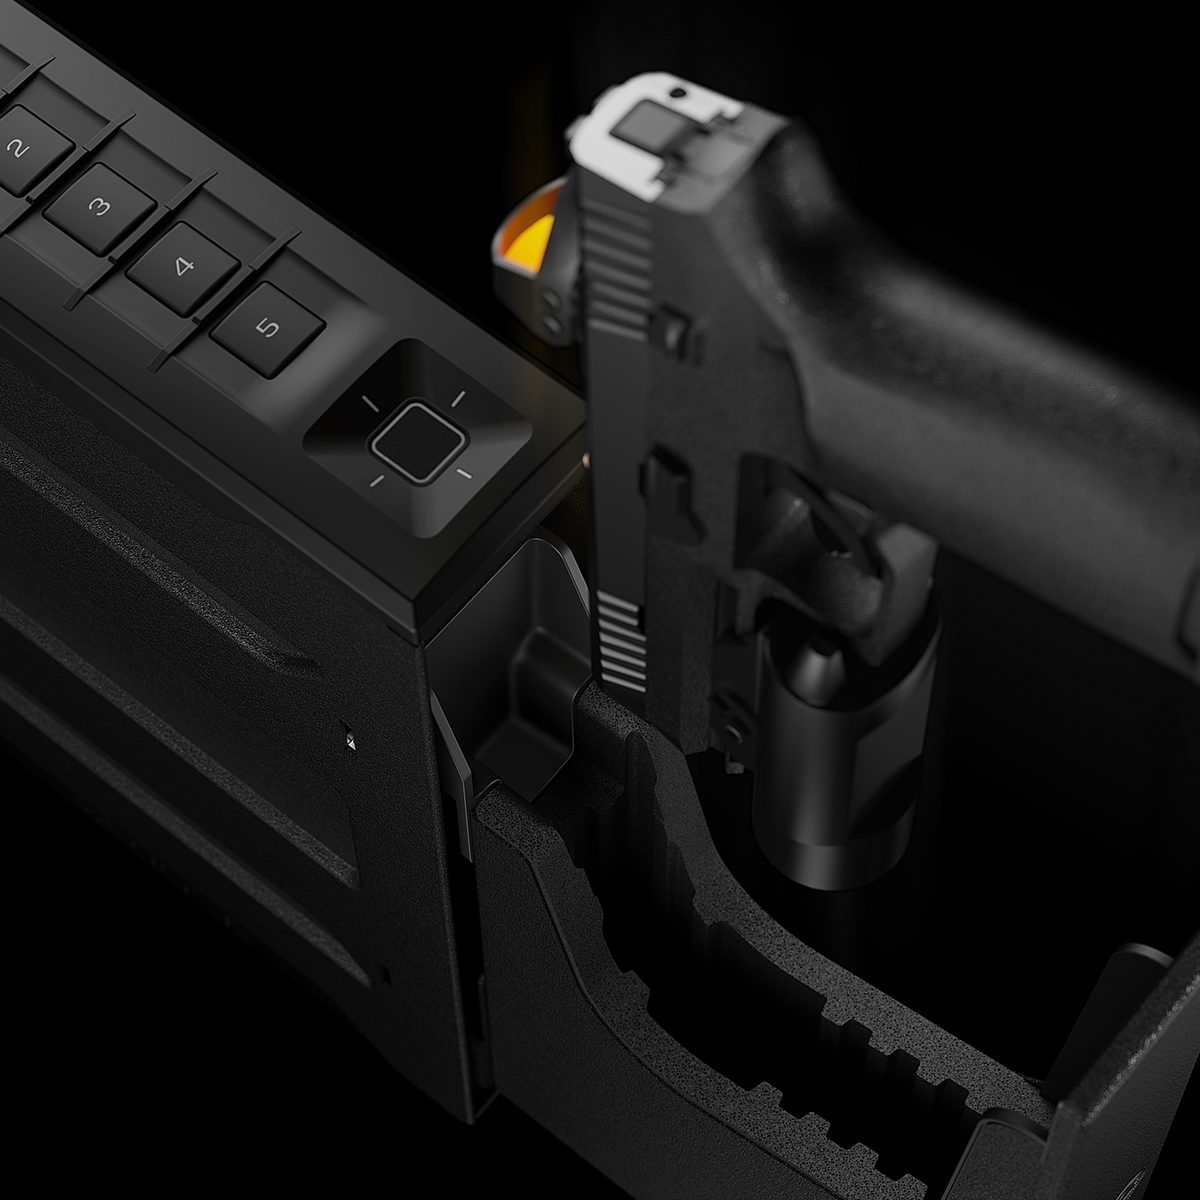 Vaultek SR20i Biometric &amp; Bluetooth 2.0 Slider Handgun Safe Pistol Going In